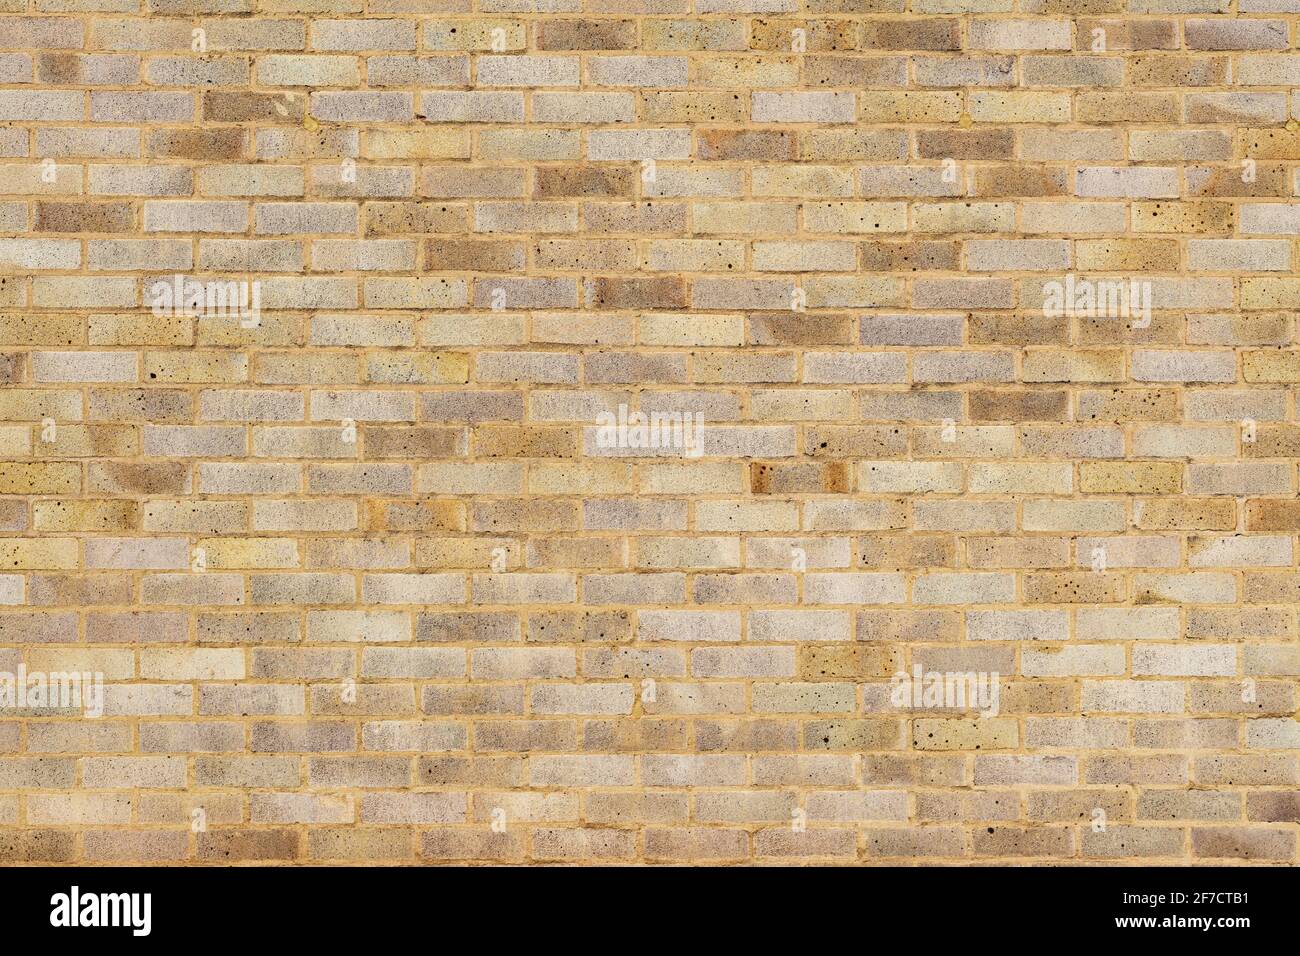 Arenaria muro di mattoni sfondo varietà di mattoni muro fatto Con i mattoni di casa nuovi standard alta risoluzione foto di alta qualità Foto Stock